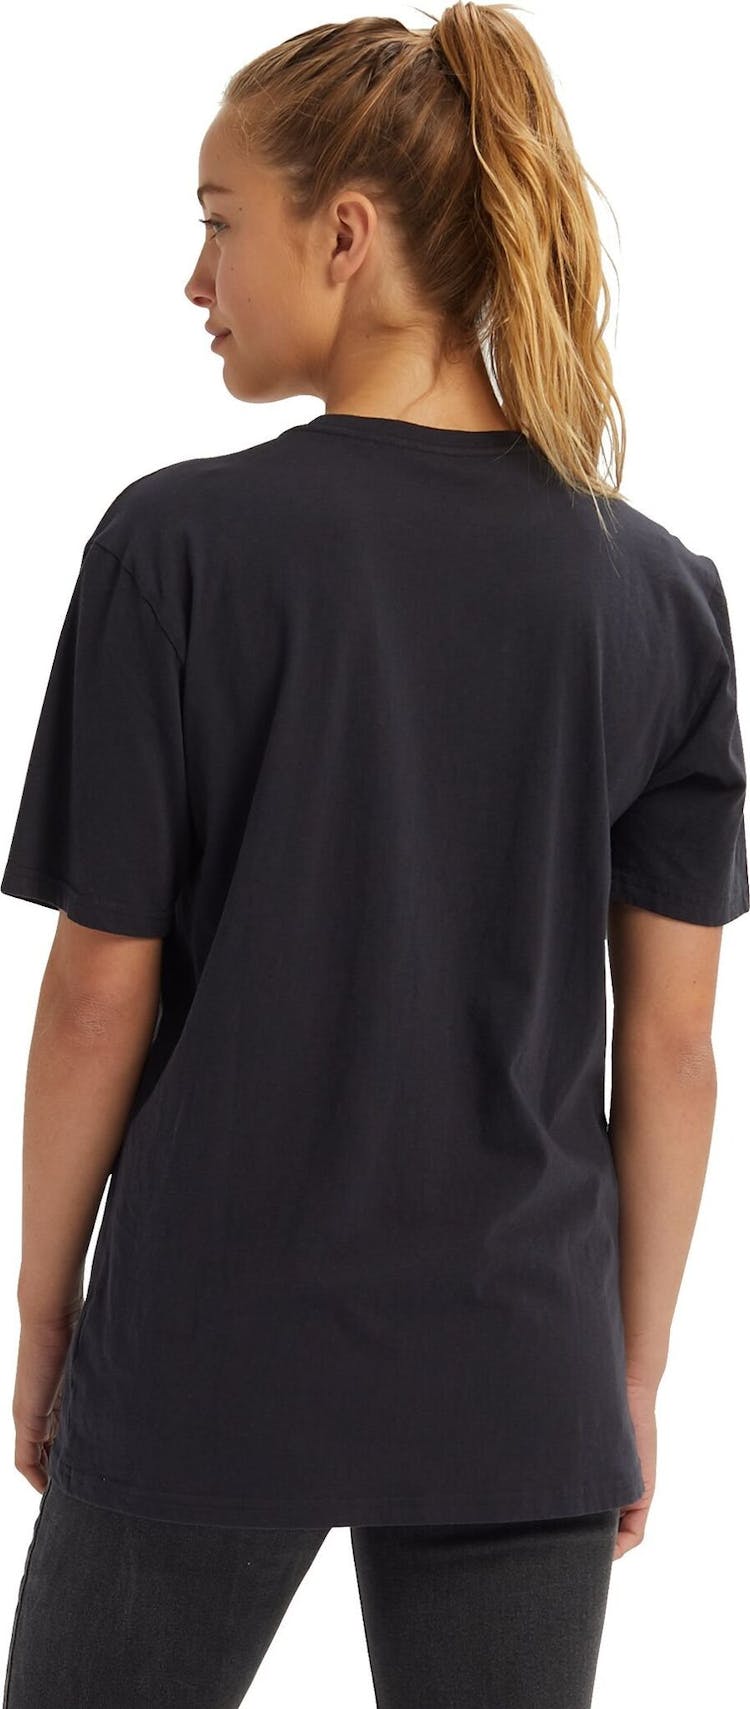 Numéro de l'image de la galerie de produits 4 pour le produit T-shirt à manches courtes Durable Goods - Unisexe